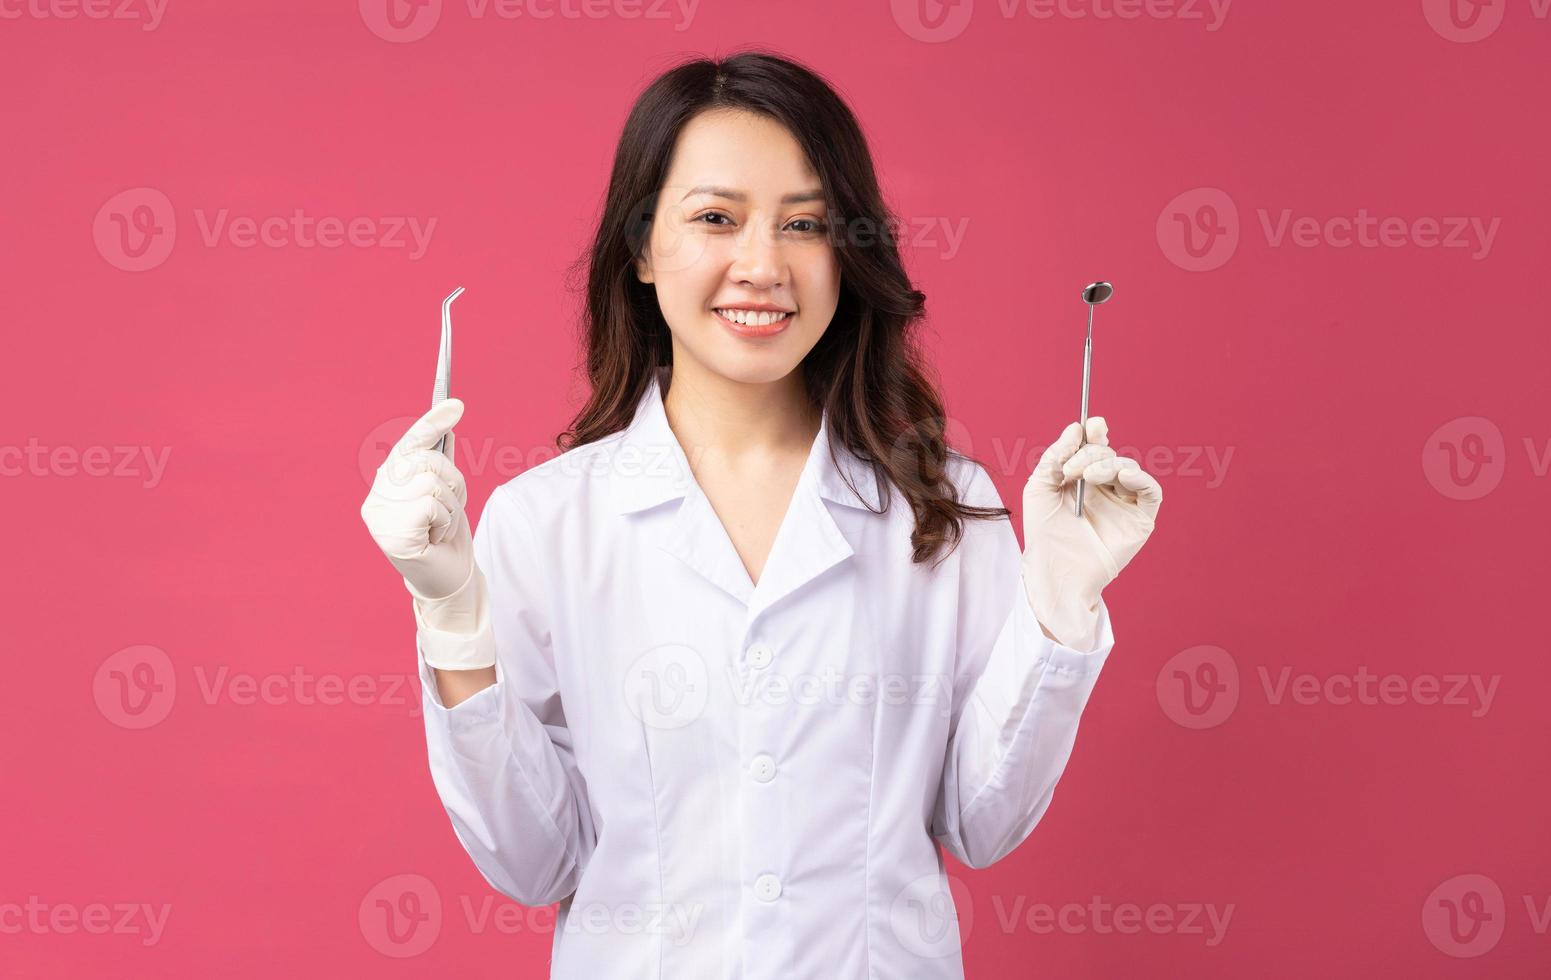 jovem médica asiática com expressão alegre no fundo foto